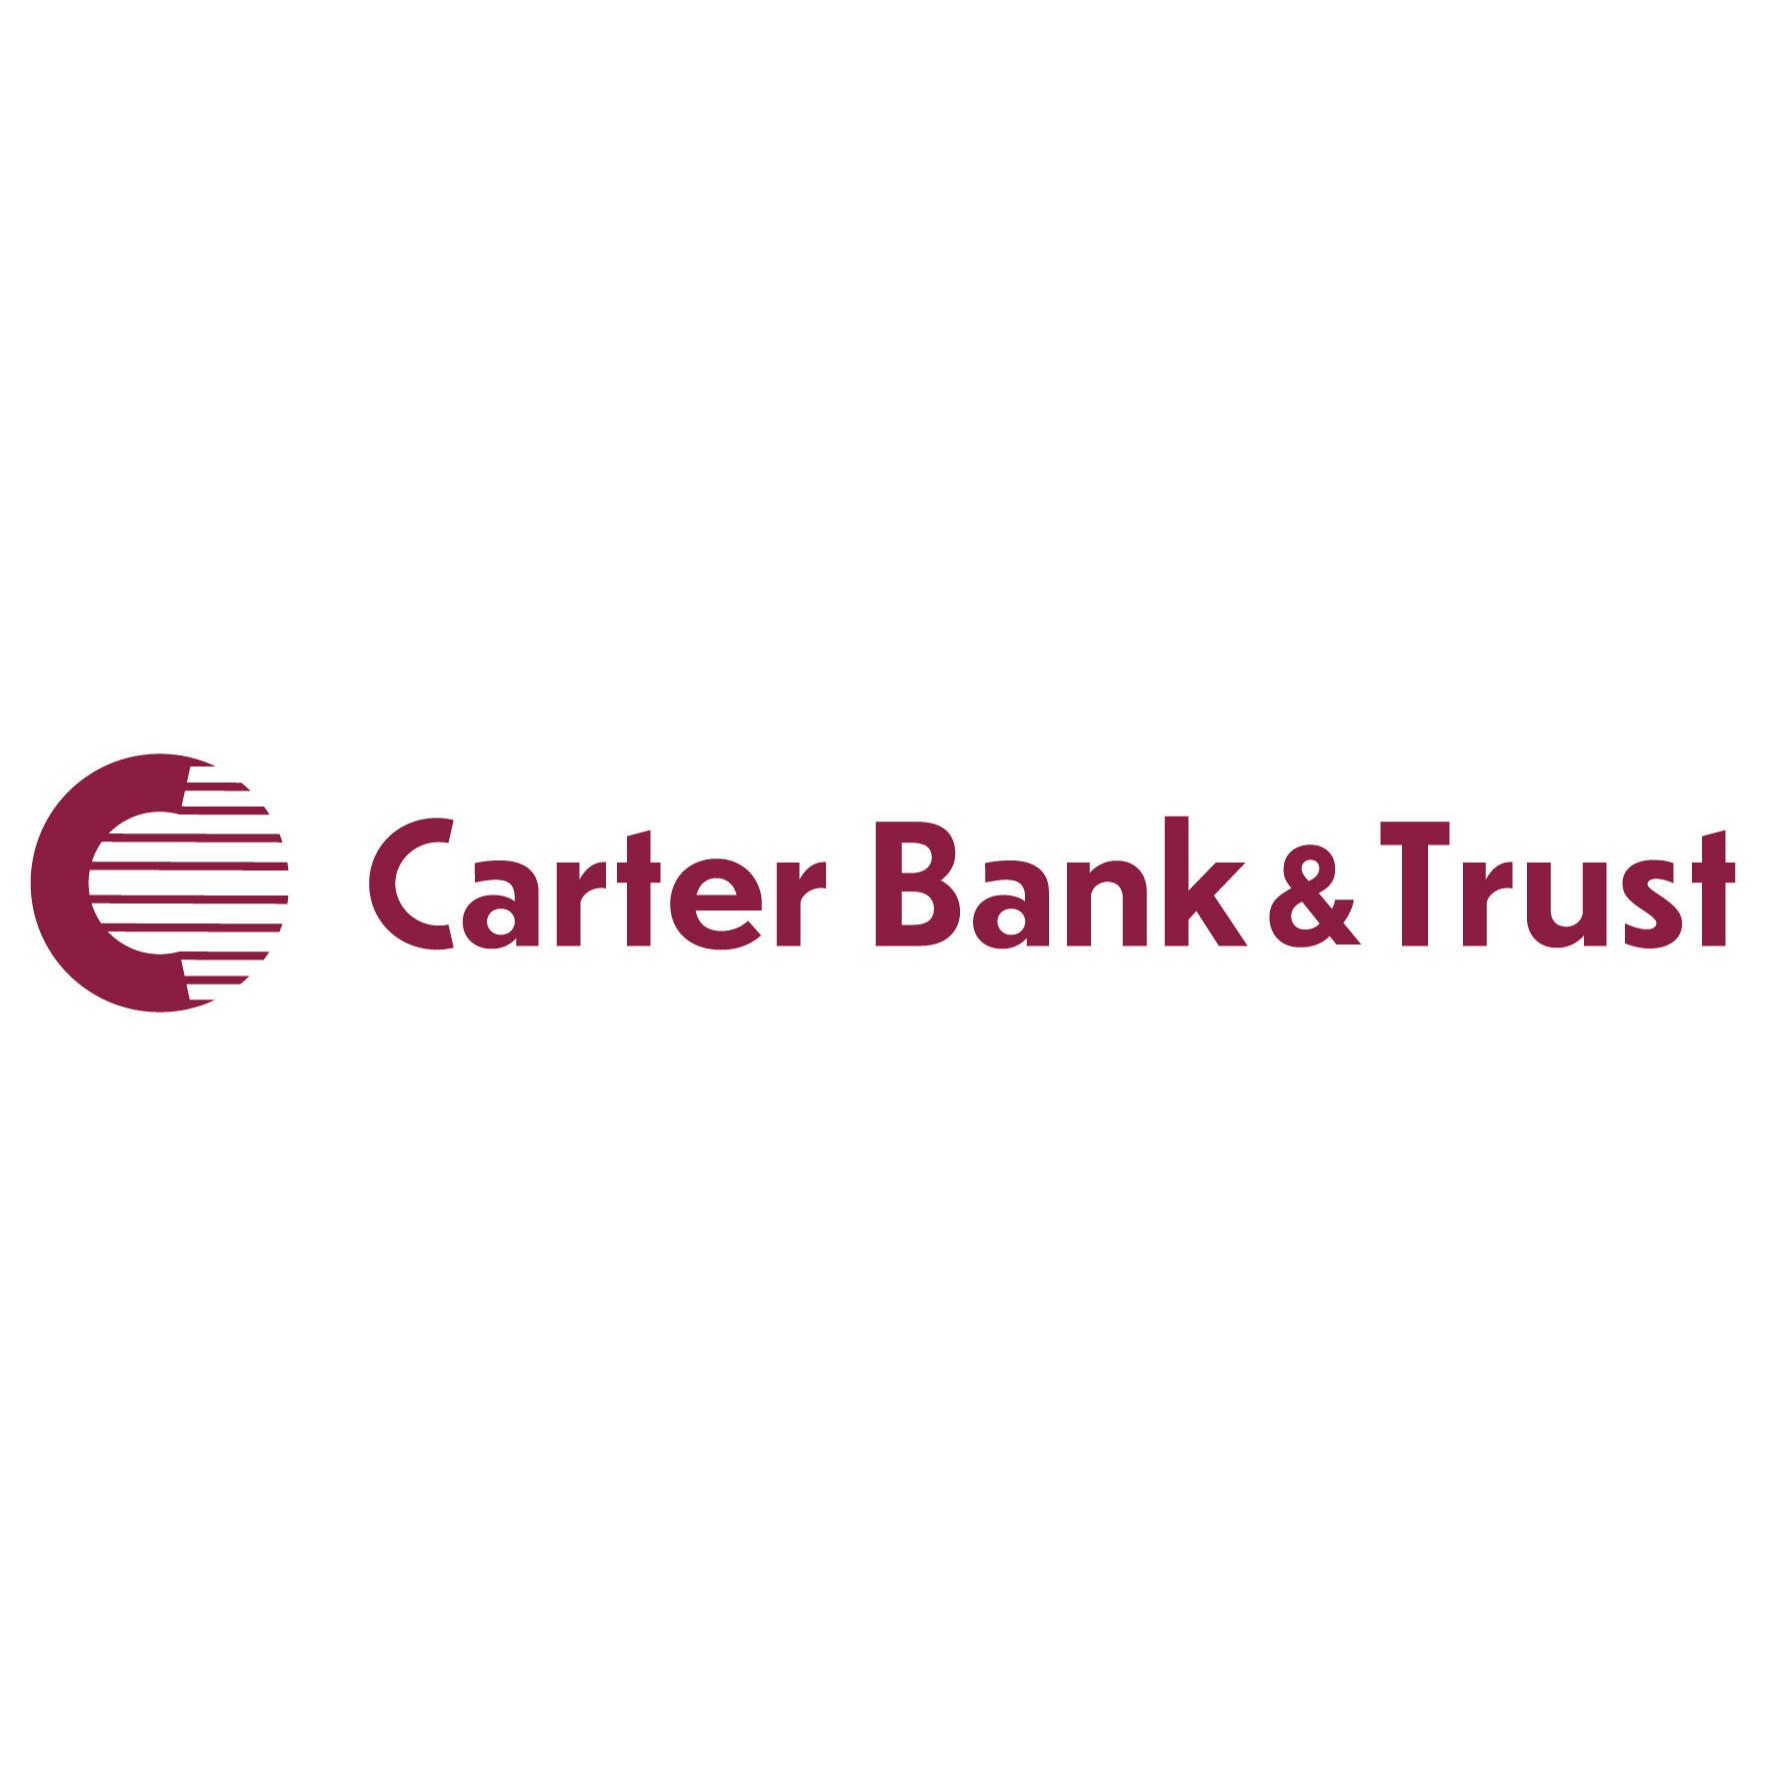 Carter Bank & Trust - Danville, VA 24540 - (434)836-5543 | ShowMeLocal.com